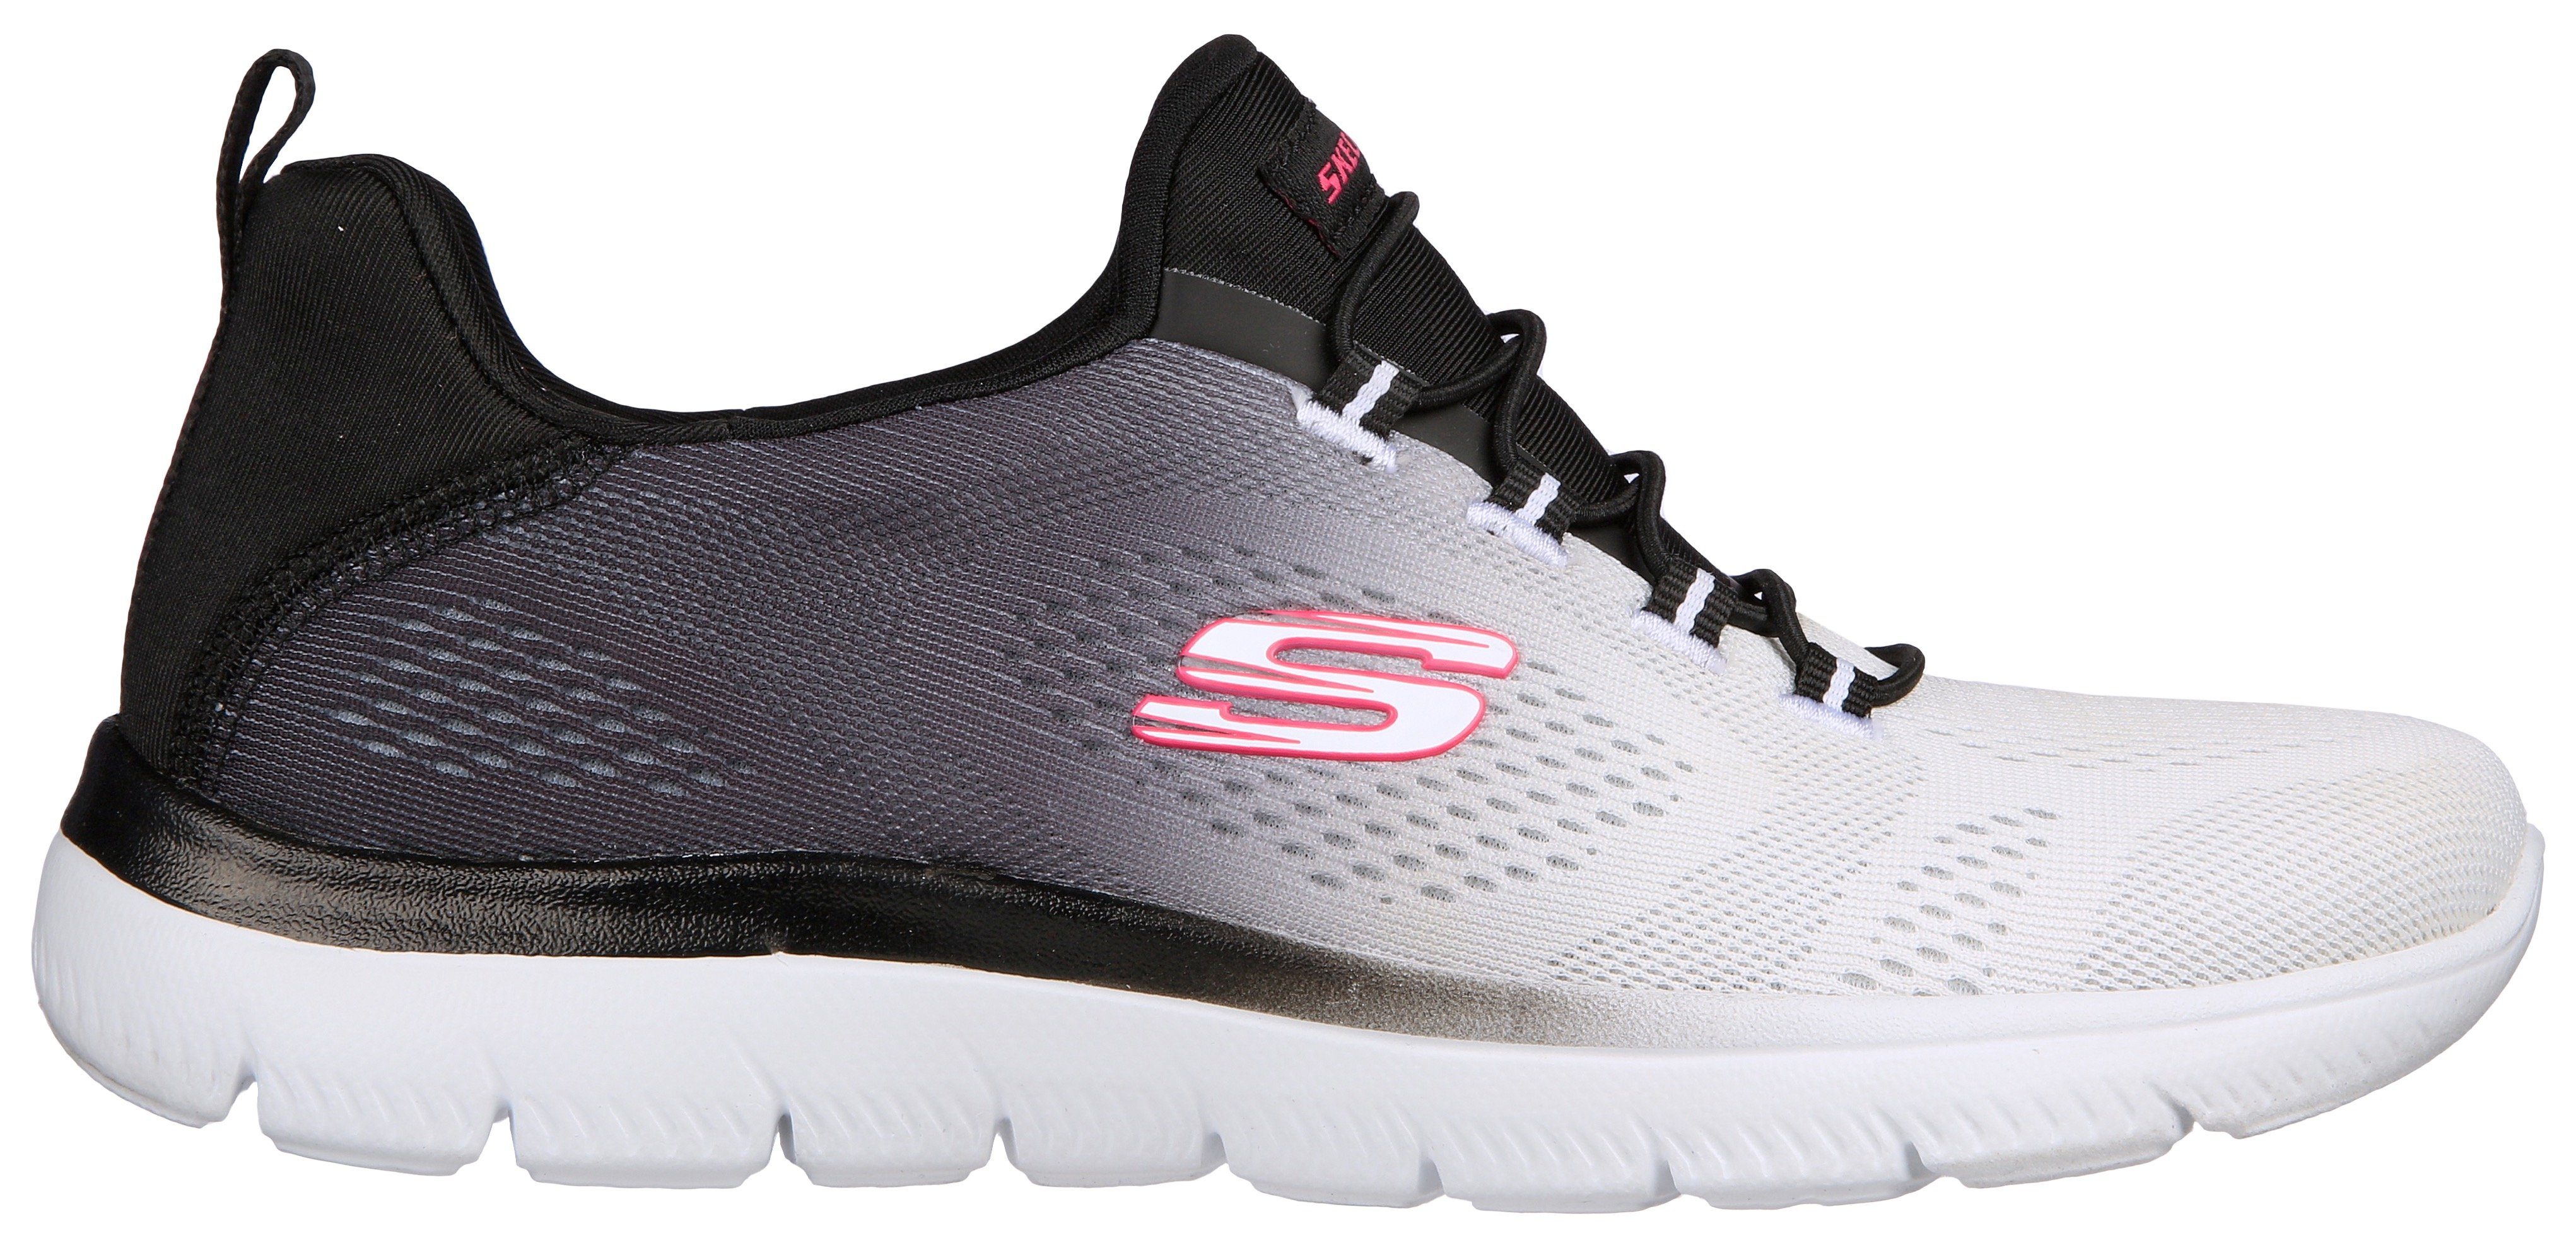 mit schönem CHARMER BRIGHT schwarz-weiß Slip-On Skechers Farbverlauf SUMMITS Sneaker